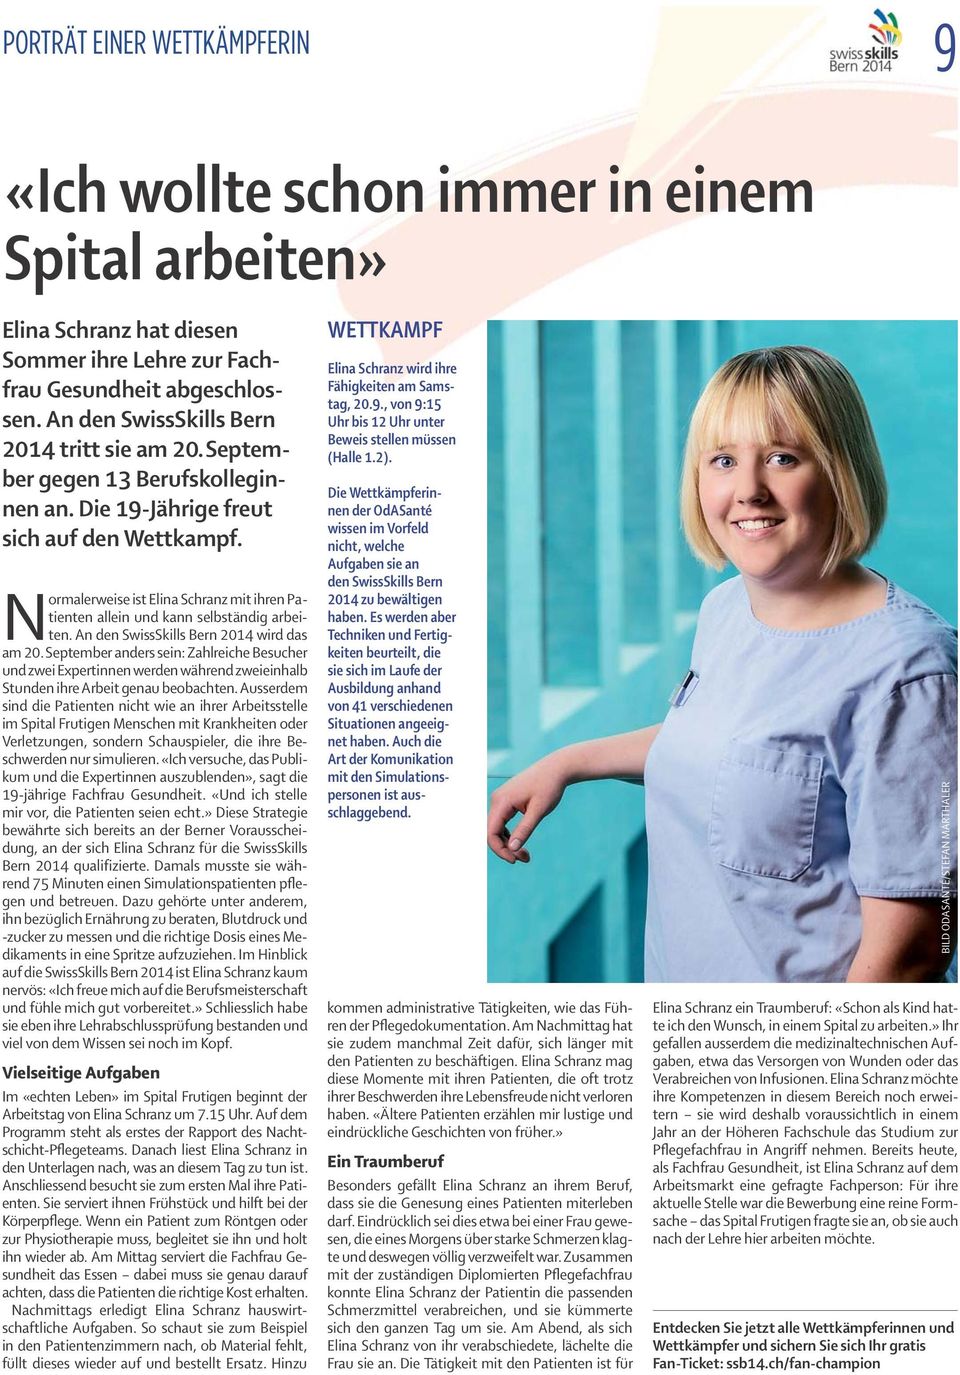 Normalerweise ist Elina Schranz mit ihren Patienten allein und kann selbständig arbeiten. An den SwissSkills Bern 2014 wird das am 20.